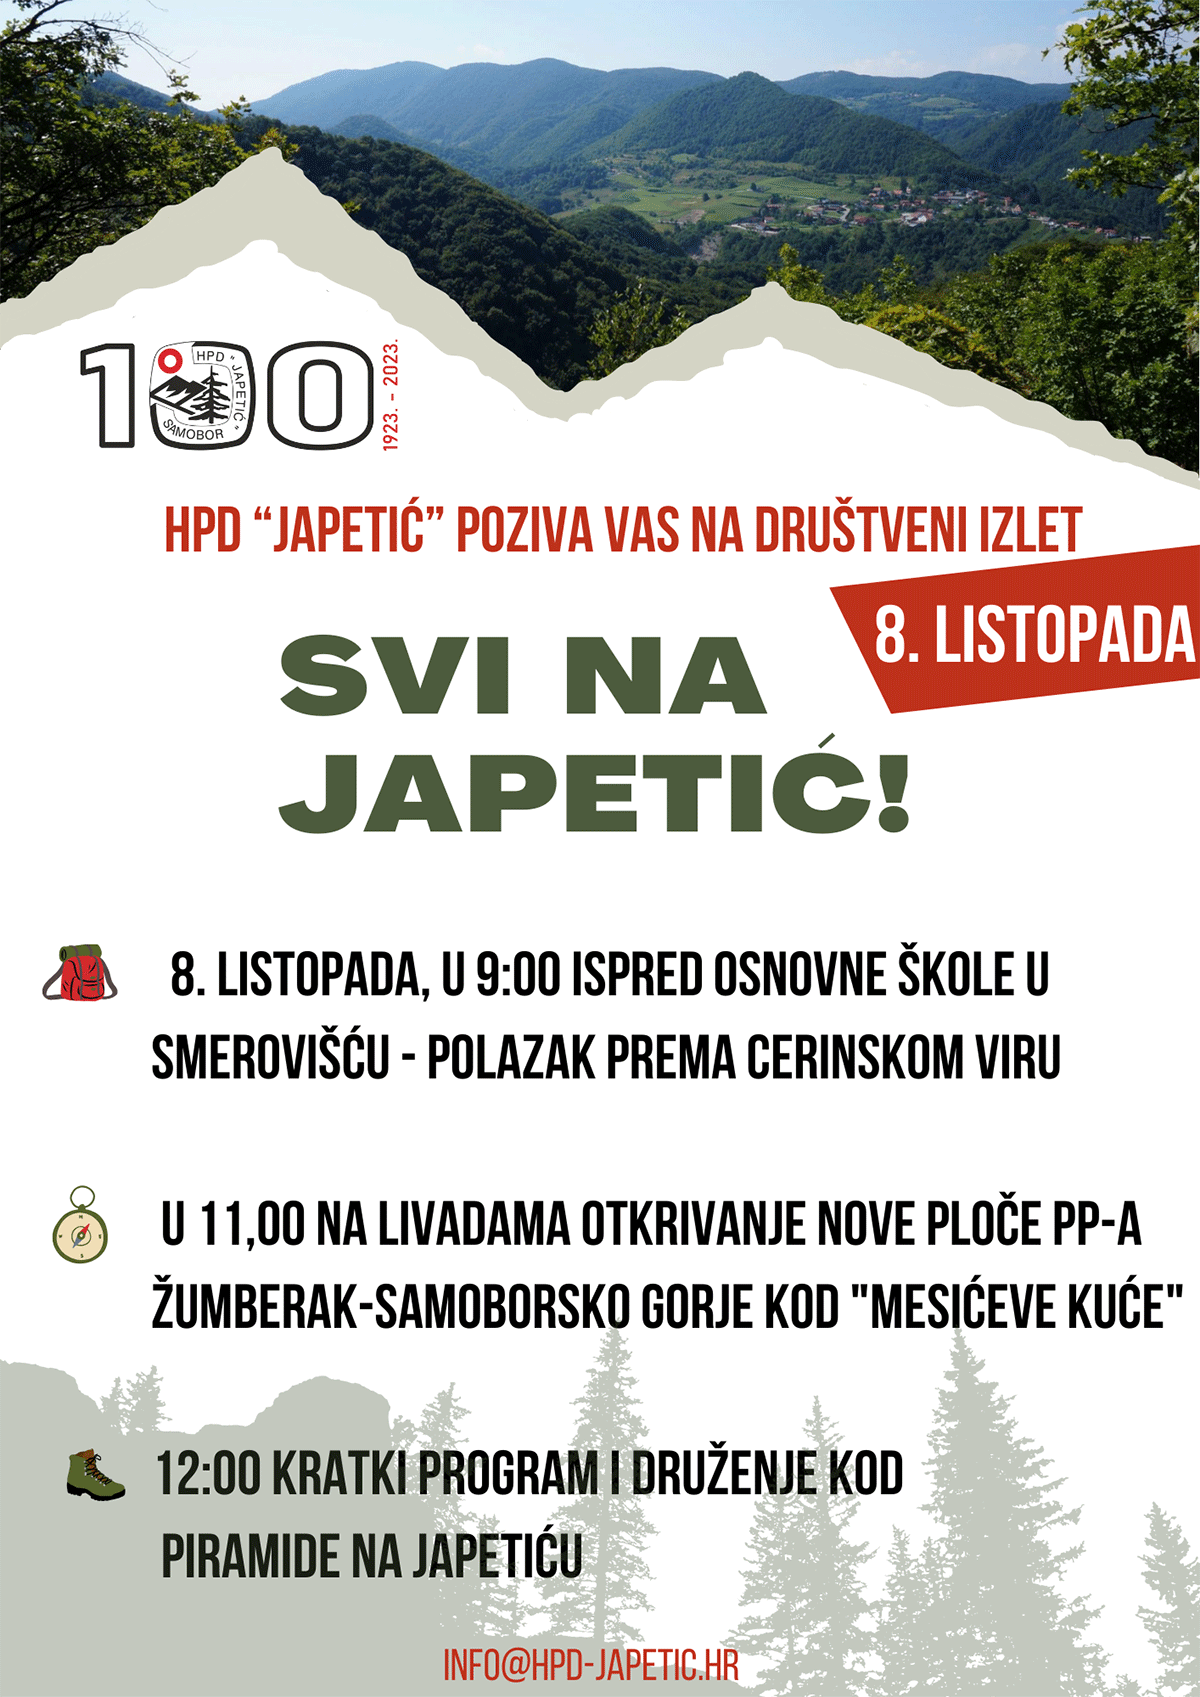 HPD Japetić slavi svoj 100. rođendan
